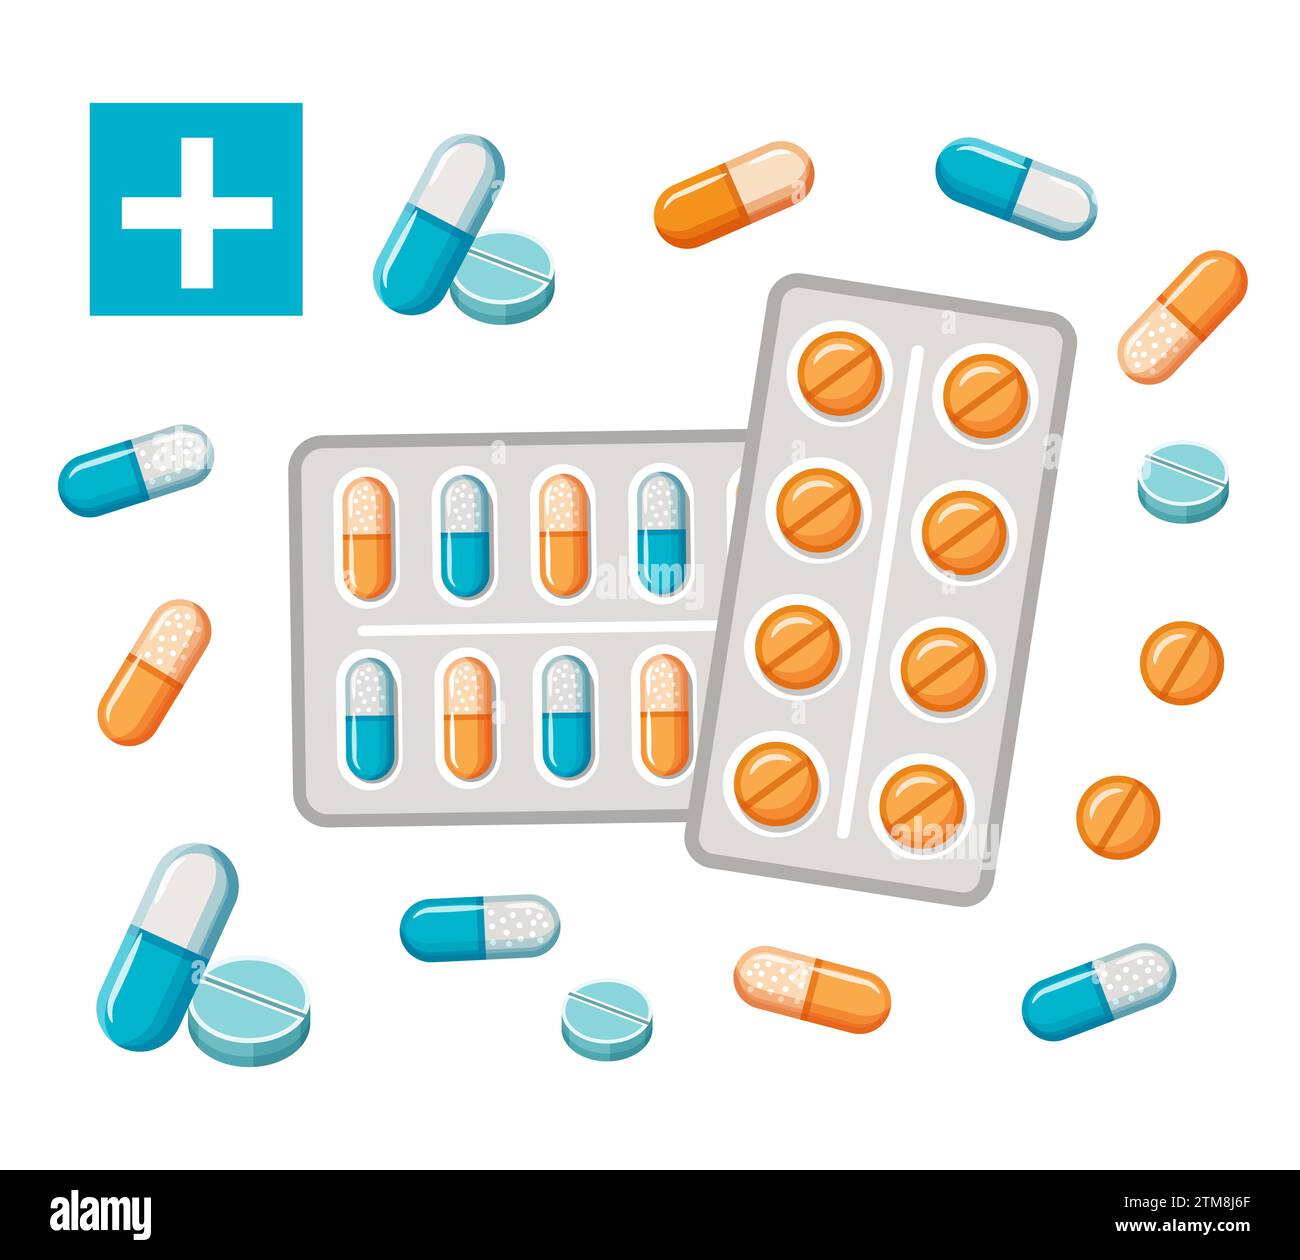 Apotheke Medizin Droge Pillen, medizinische Kapsel für die Gesundheit, Vitamintablette Blister Paket Symbol. Pharmazeutische Medikamente zur Krankheitsbehandlung. Vektor Stock Vektor